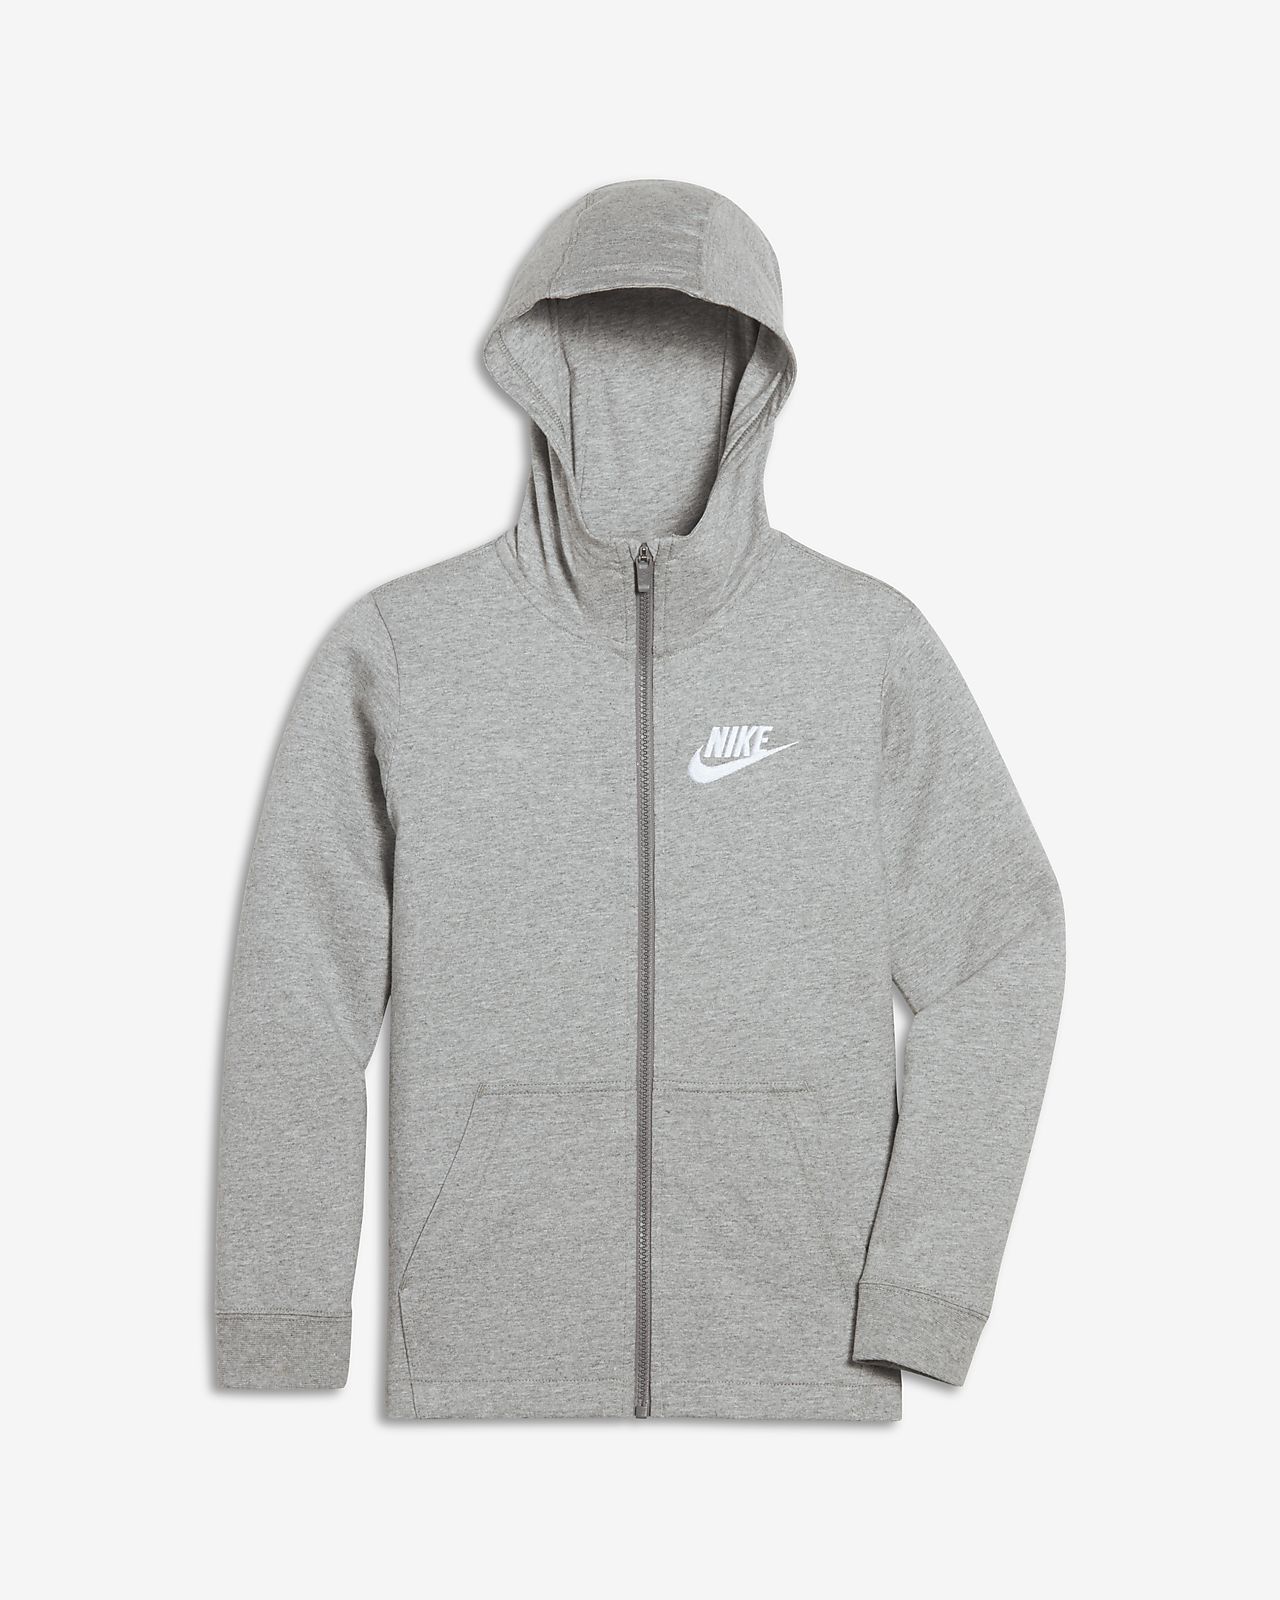 nike zip up hoodie grey